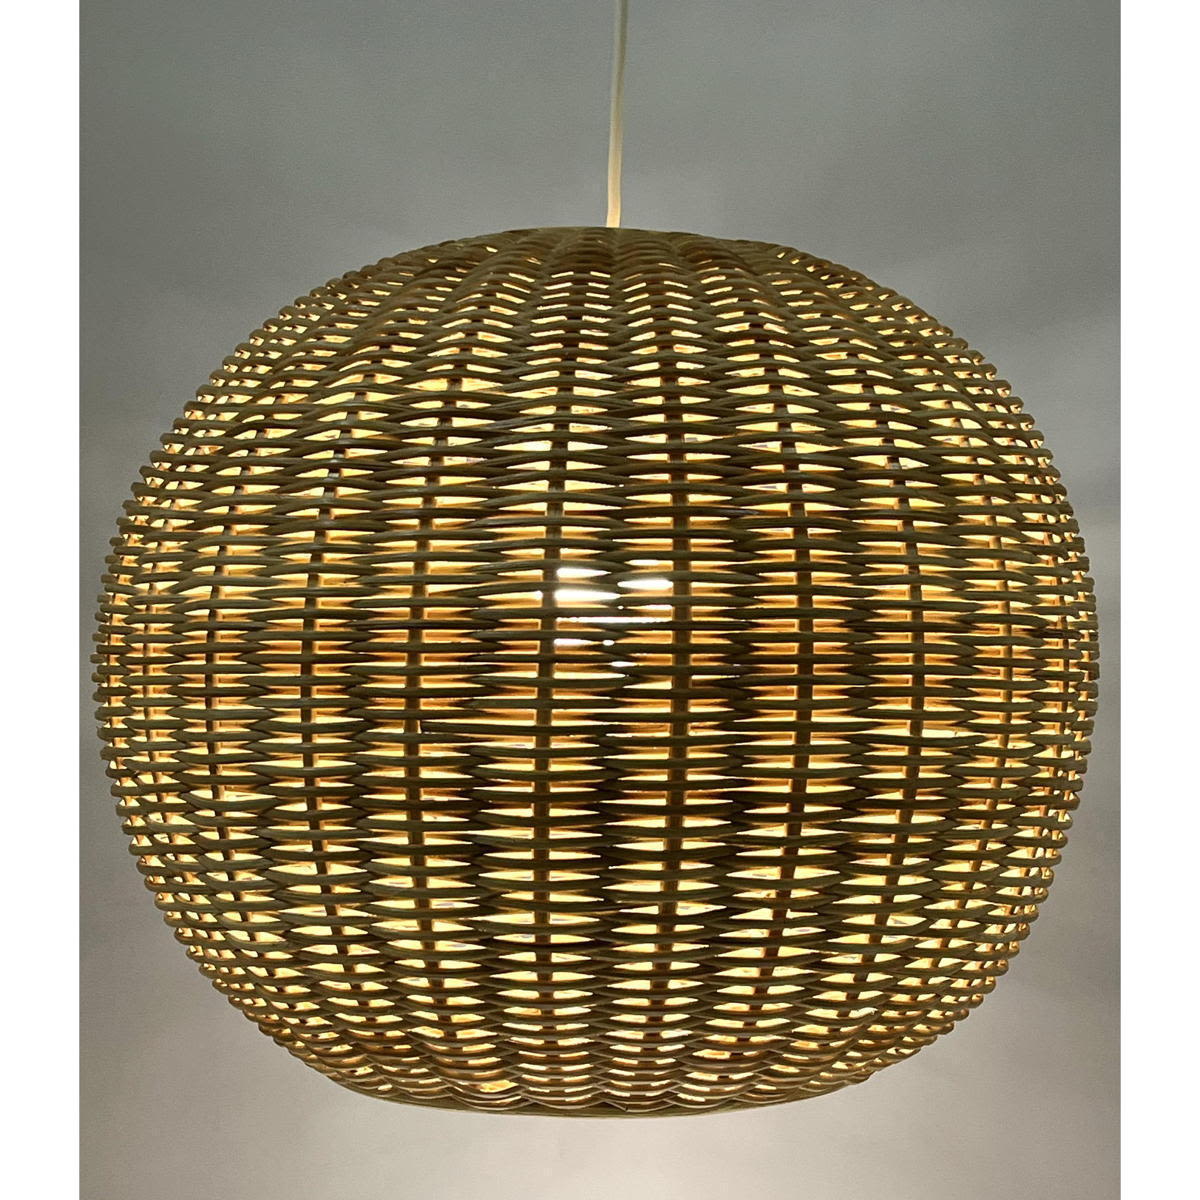 Modernist Woven Rattan Ball Shade